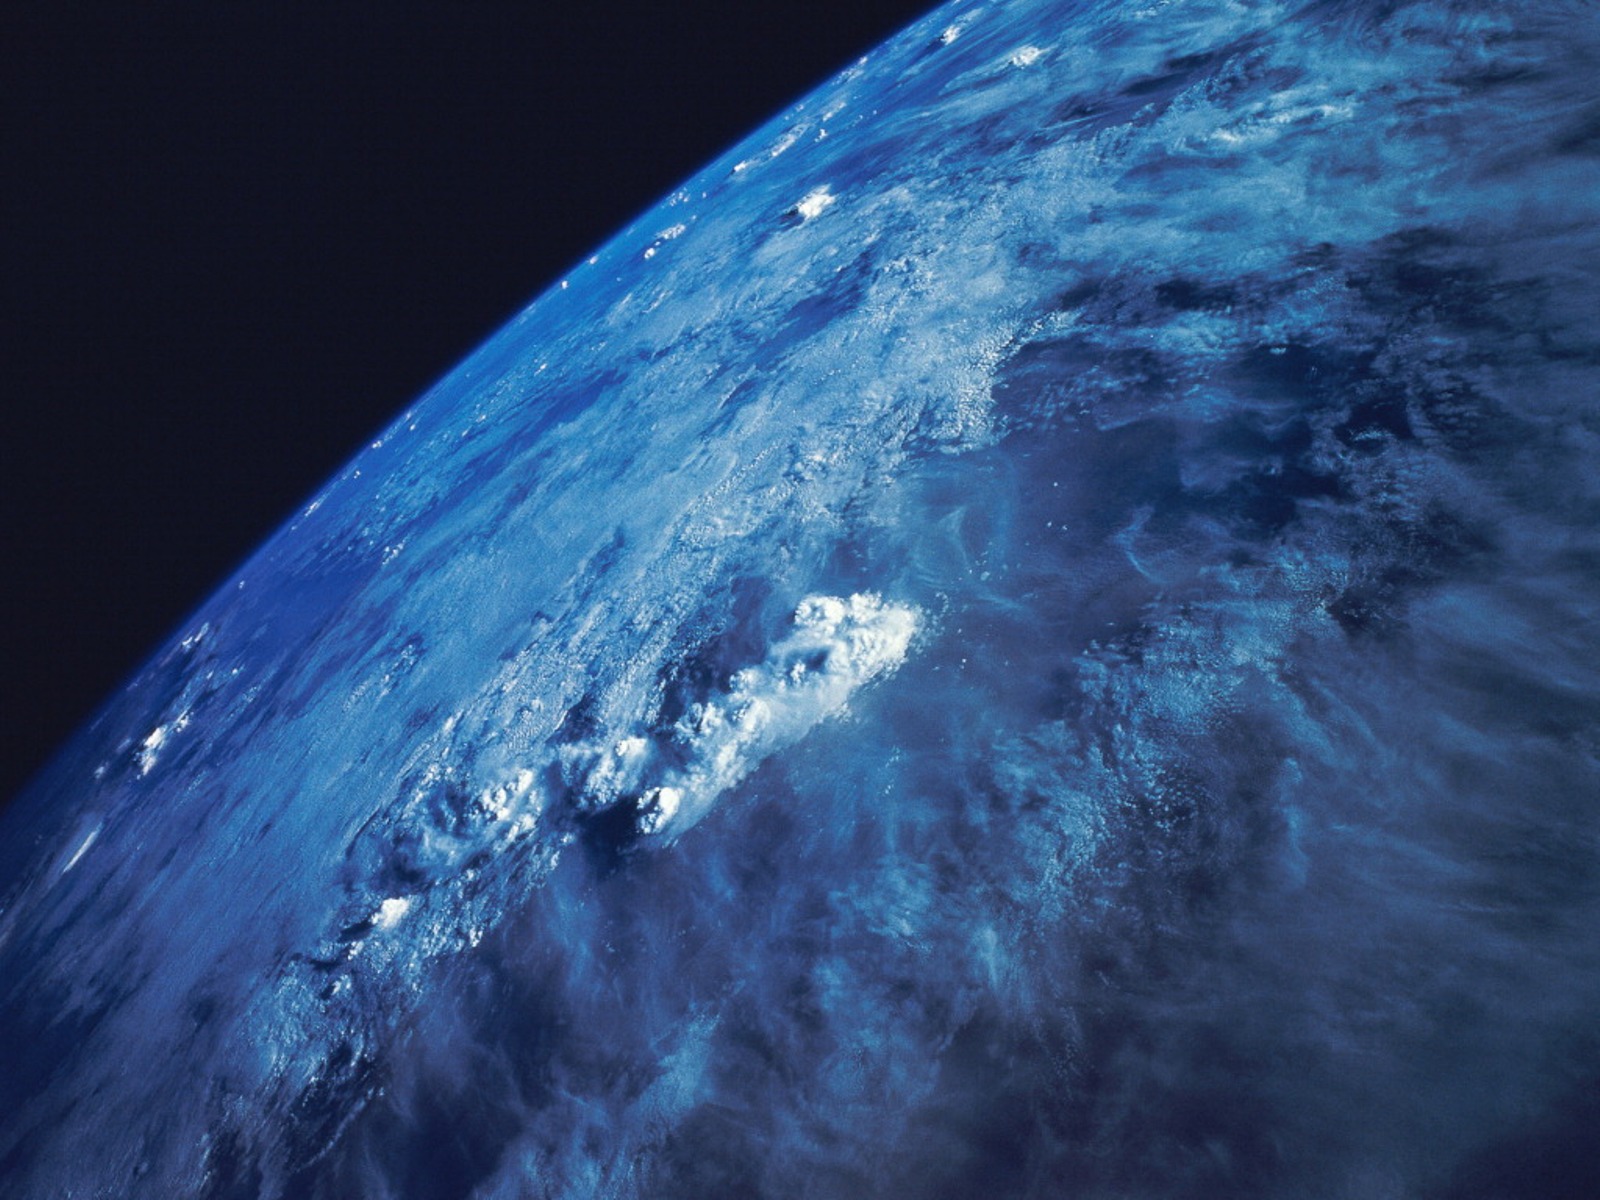 Www bing com image. Планета из космоса. Снимки земли из космоса. Планета вид из космоса. Обои земля.